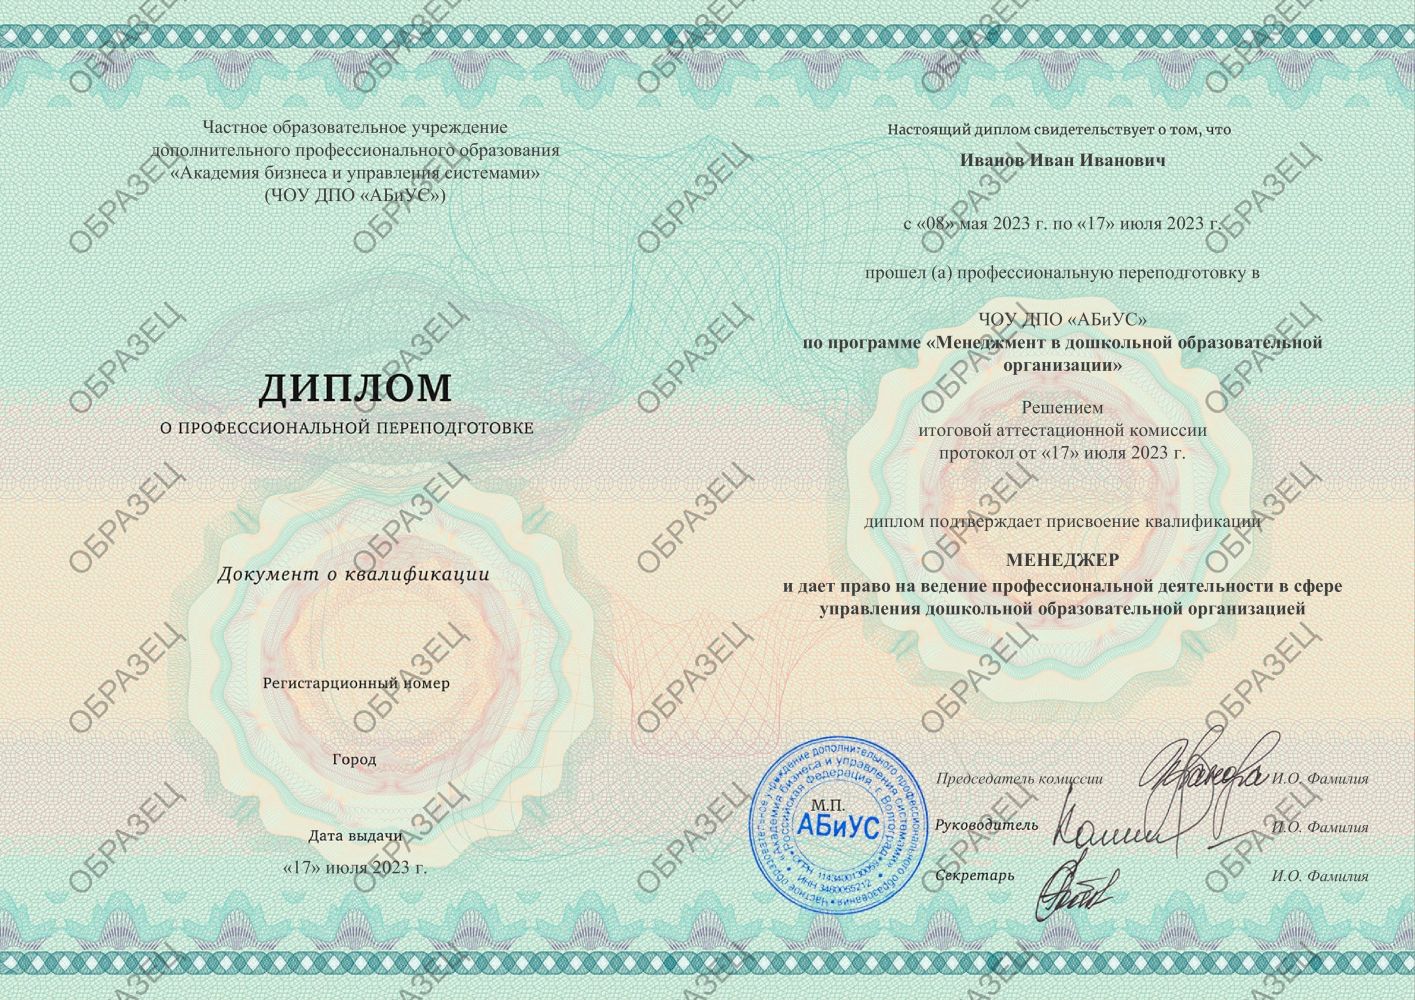 Диплом Менеджмент в дошкольной образовательной организации 260 часов 7875 руб.